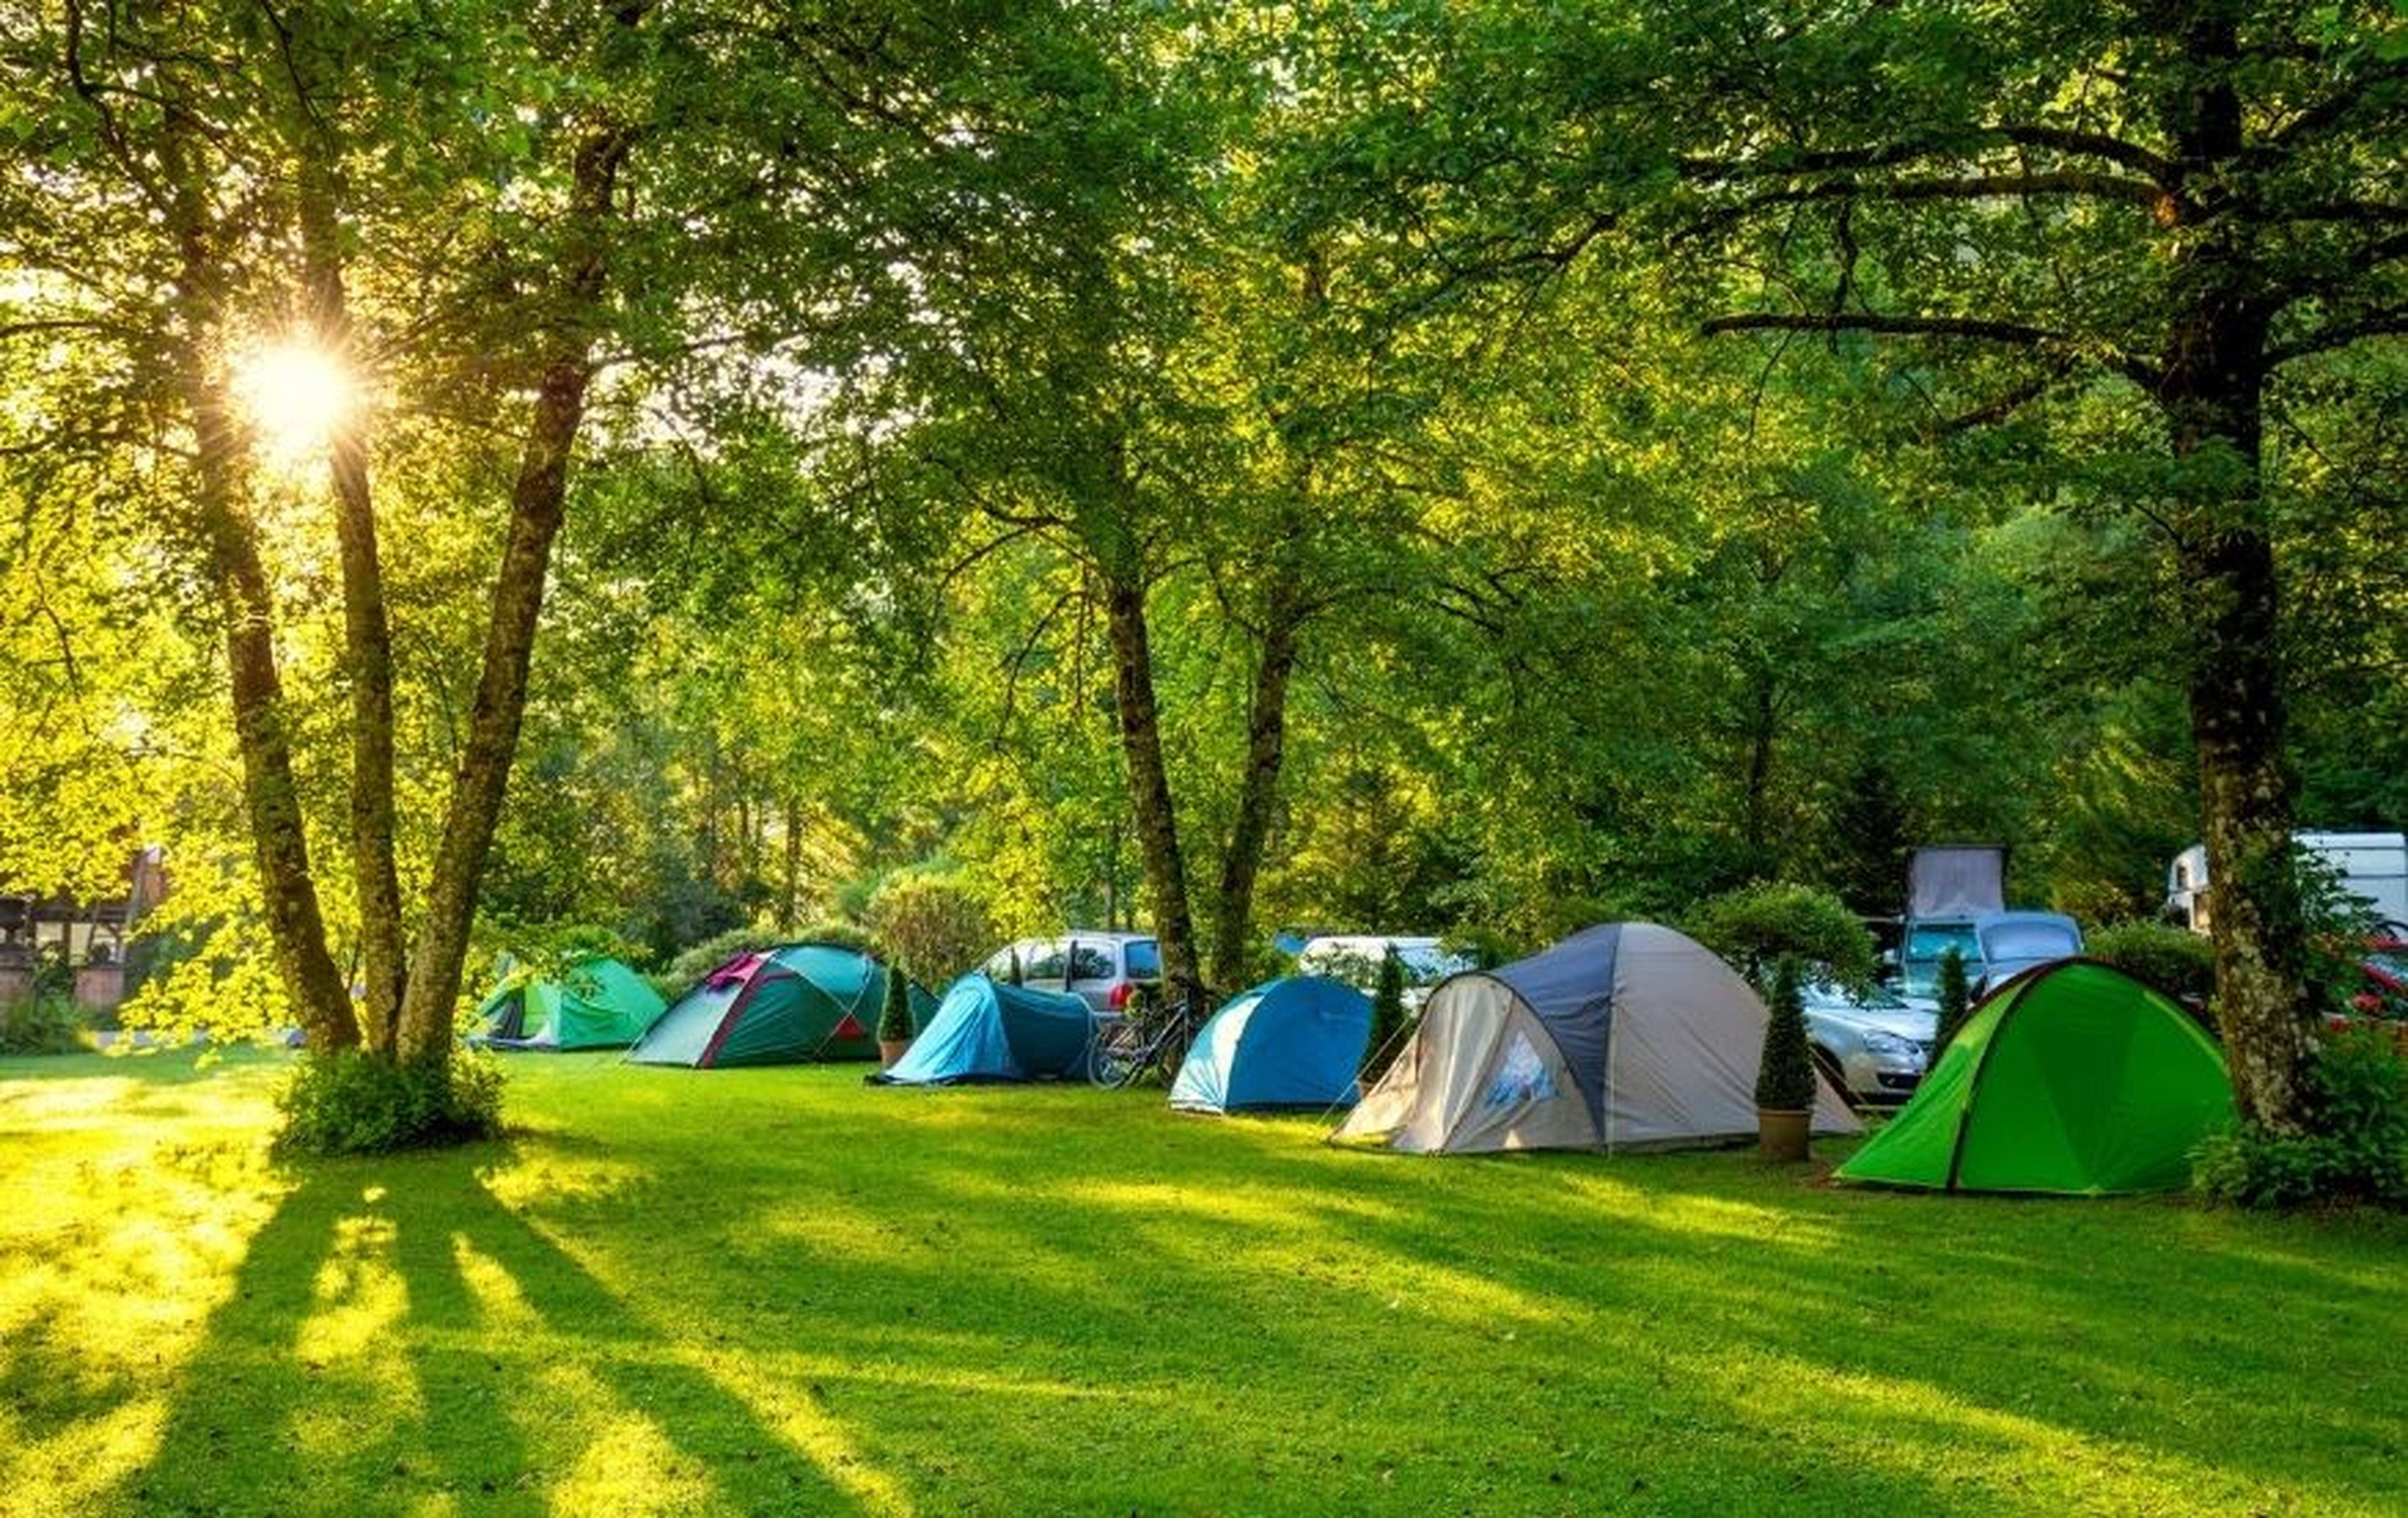 Camp klgd. Палатка Camping Tent. Палатка Ronin Camp. Кемпинг Увильды. Привольная Поляна палаточный лагерь.